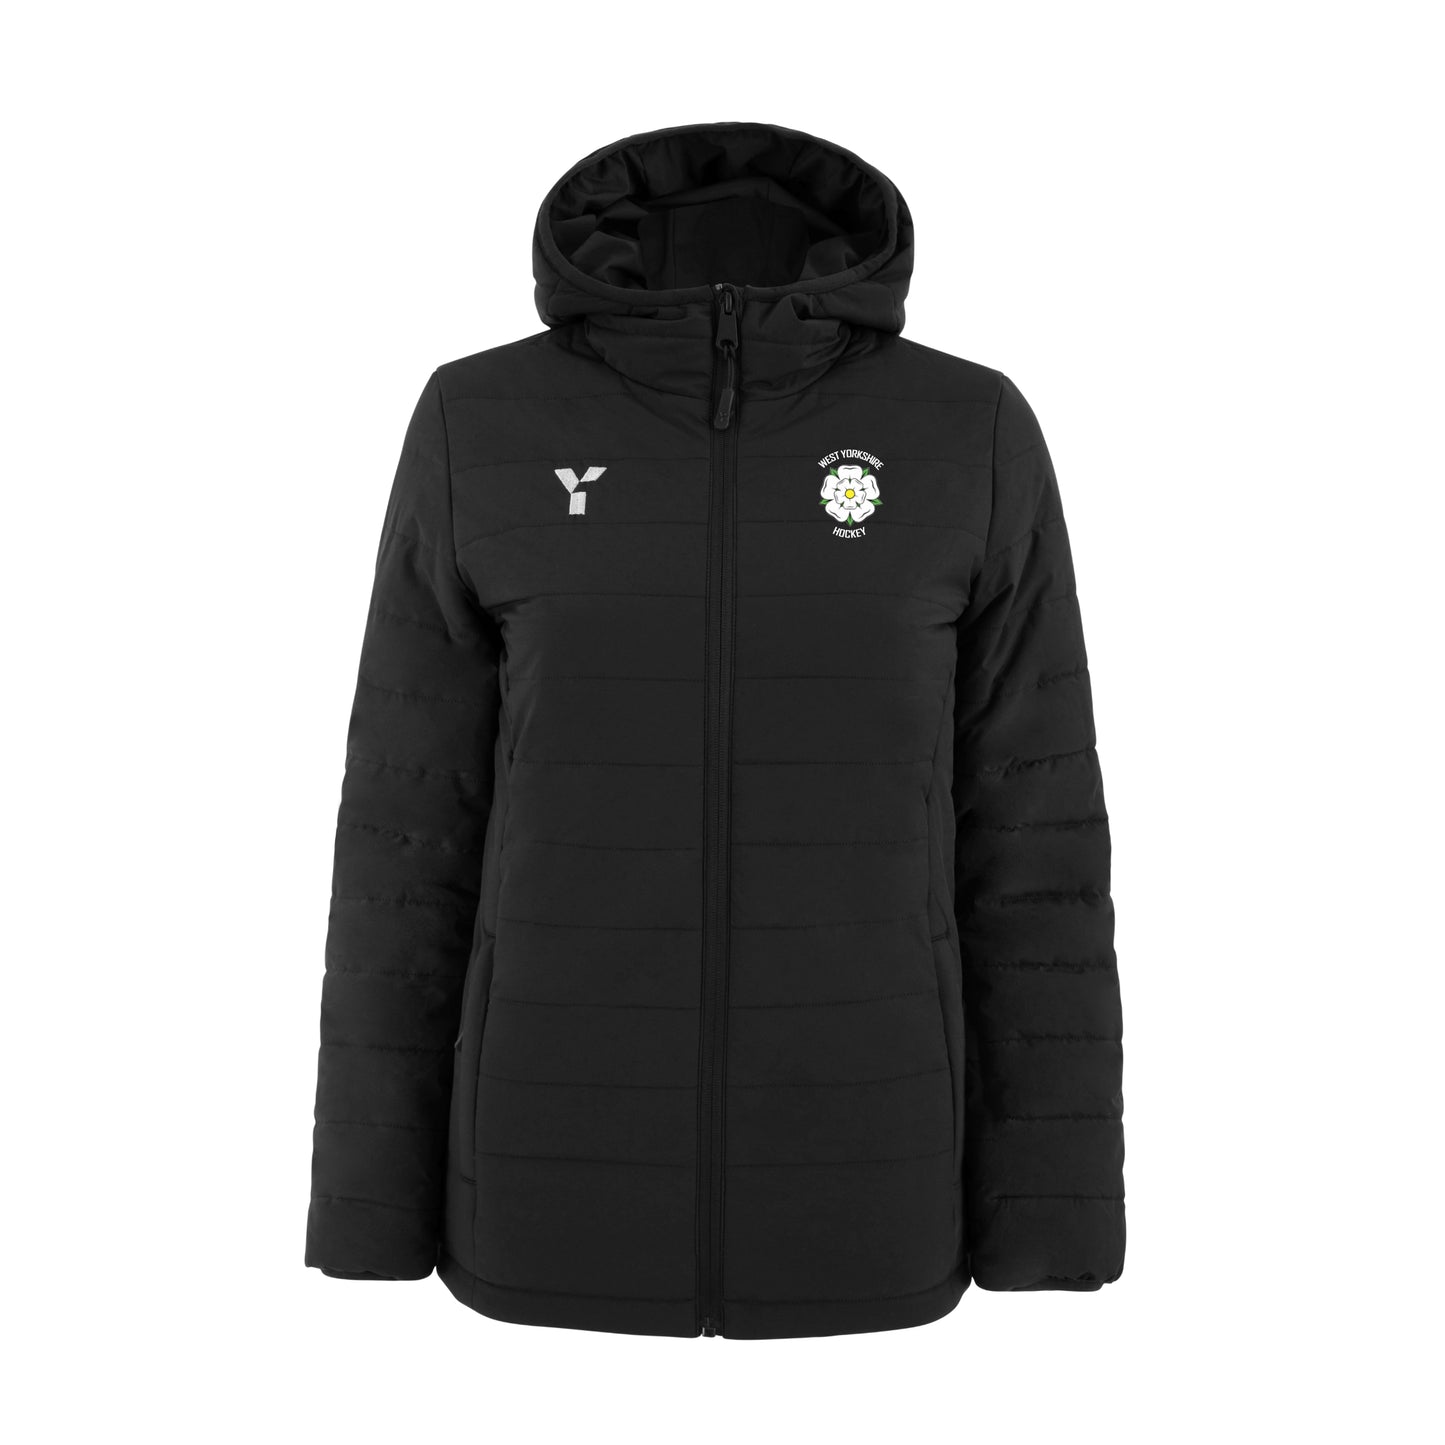 West Yorkshire Hockey - Padded Jacket Unisex Black